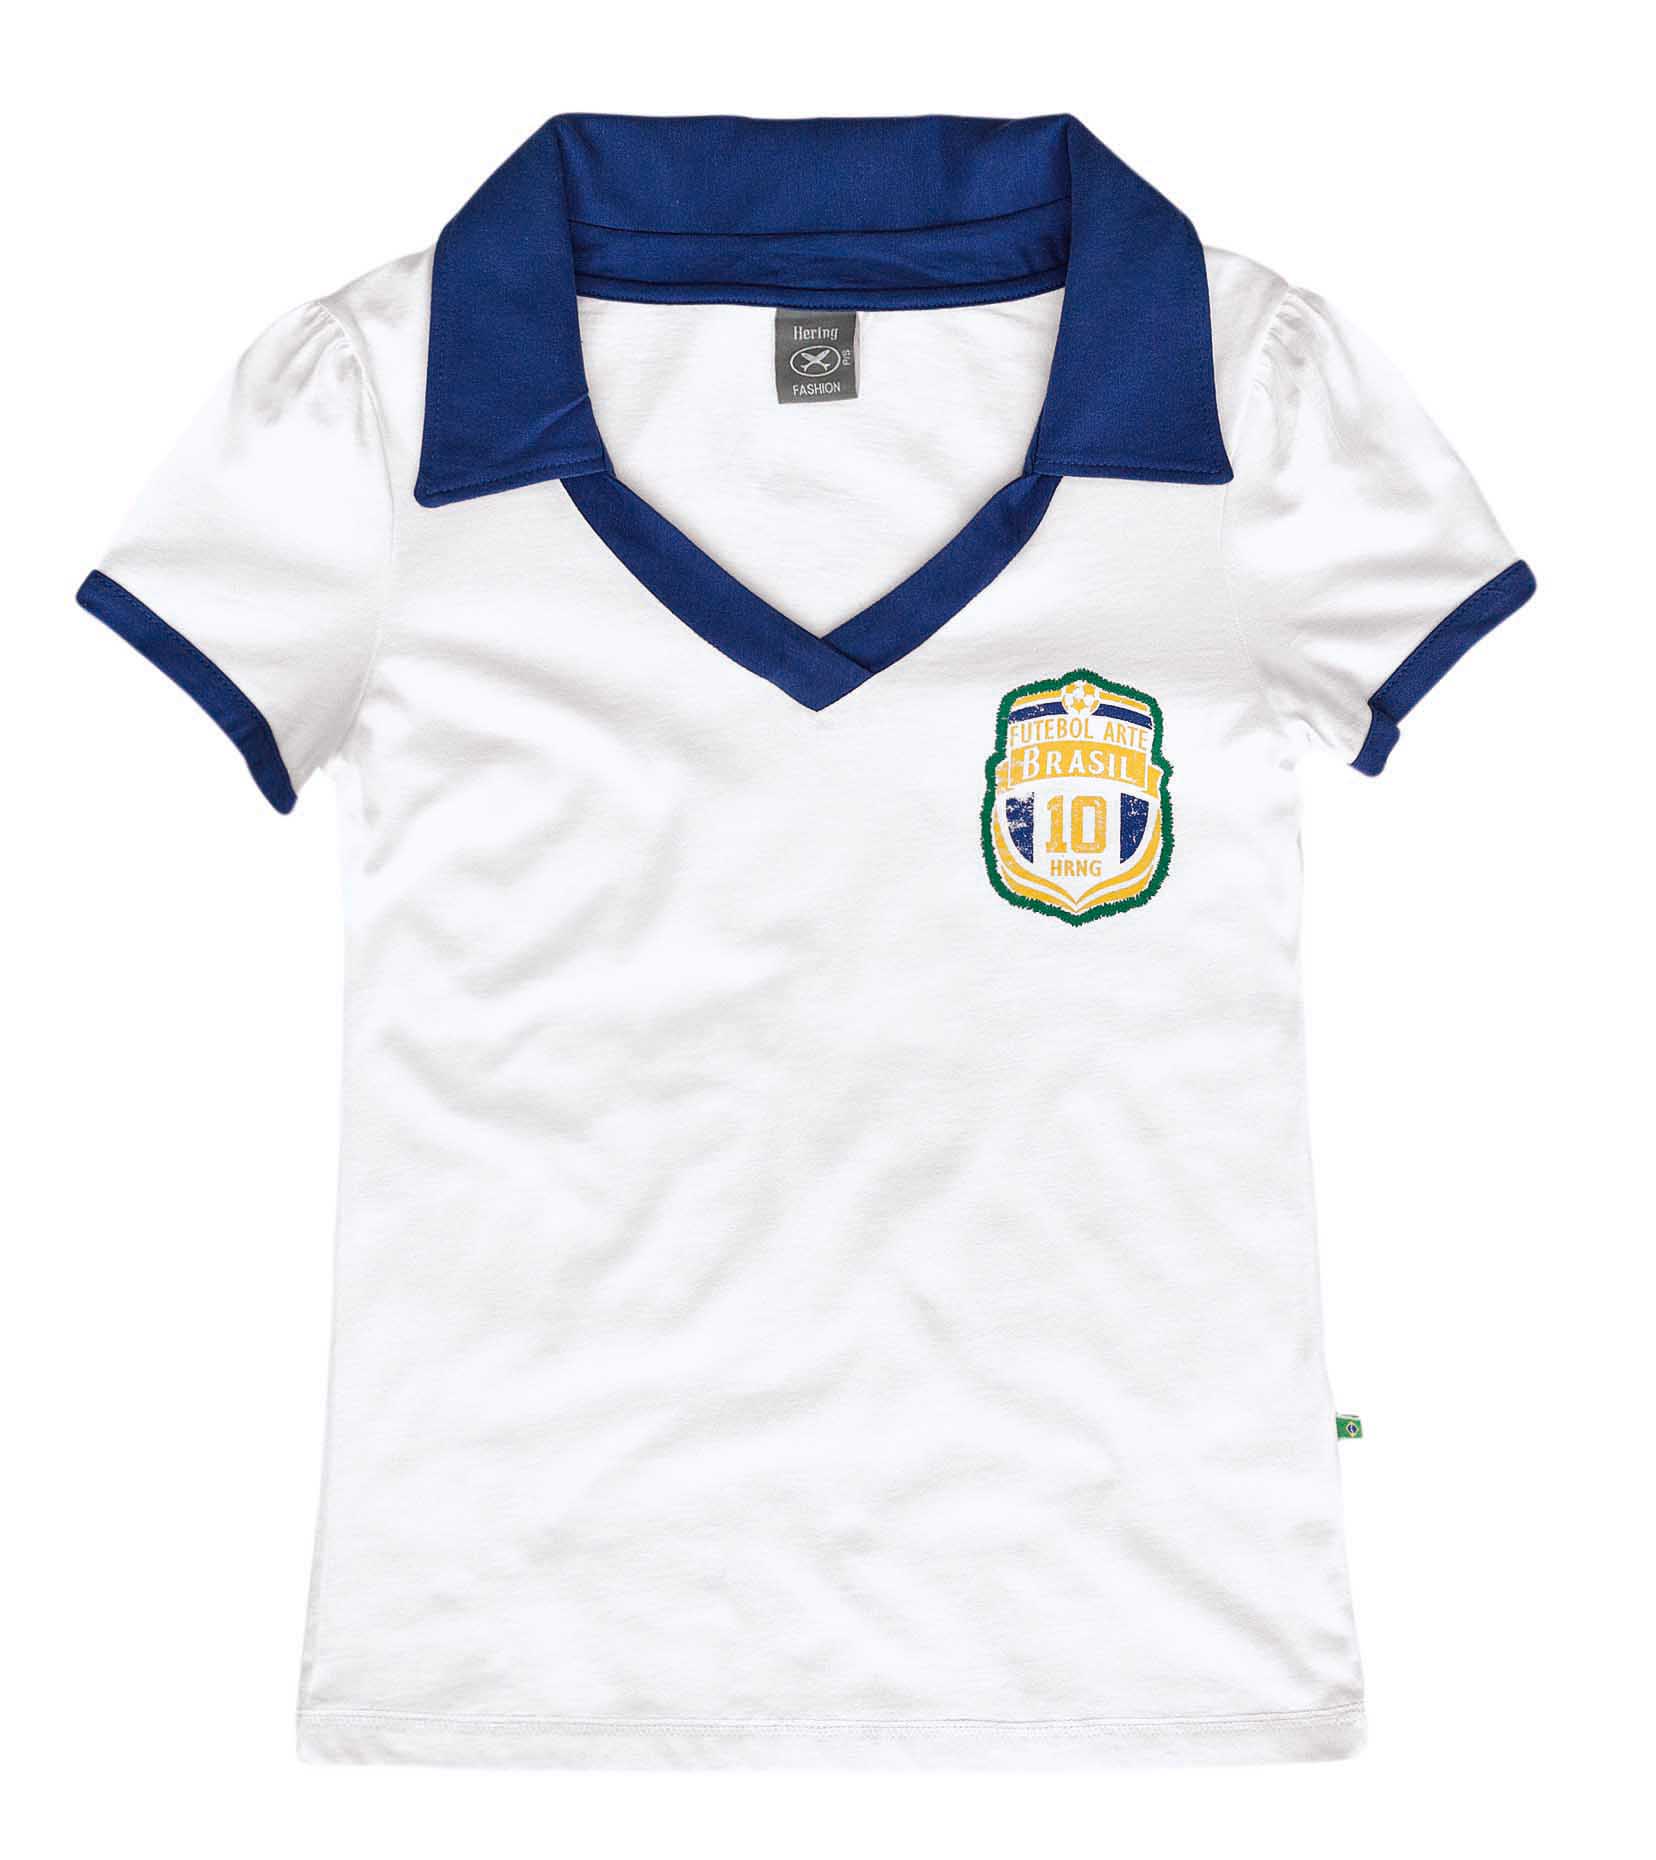 Camiseta polo nas cores branca e azul, tema Brasil.